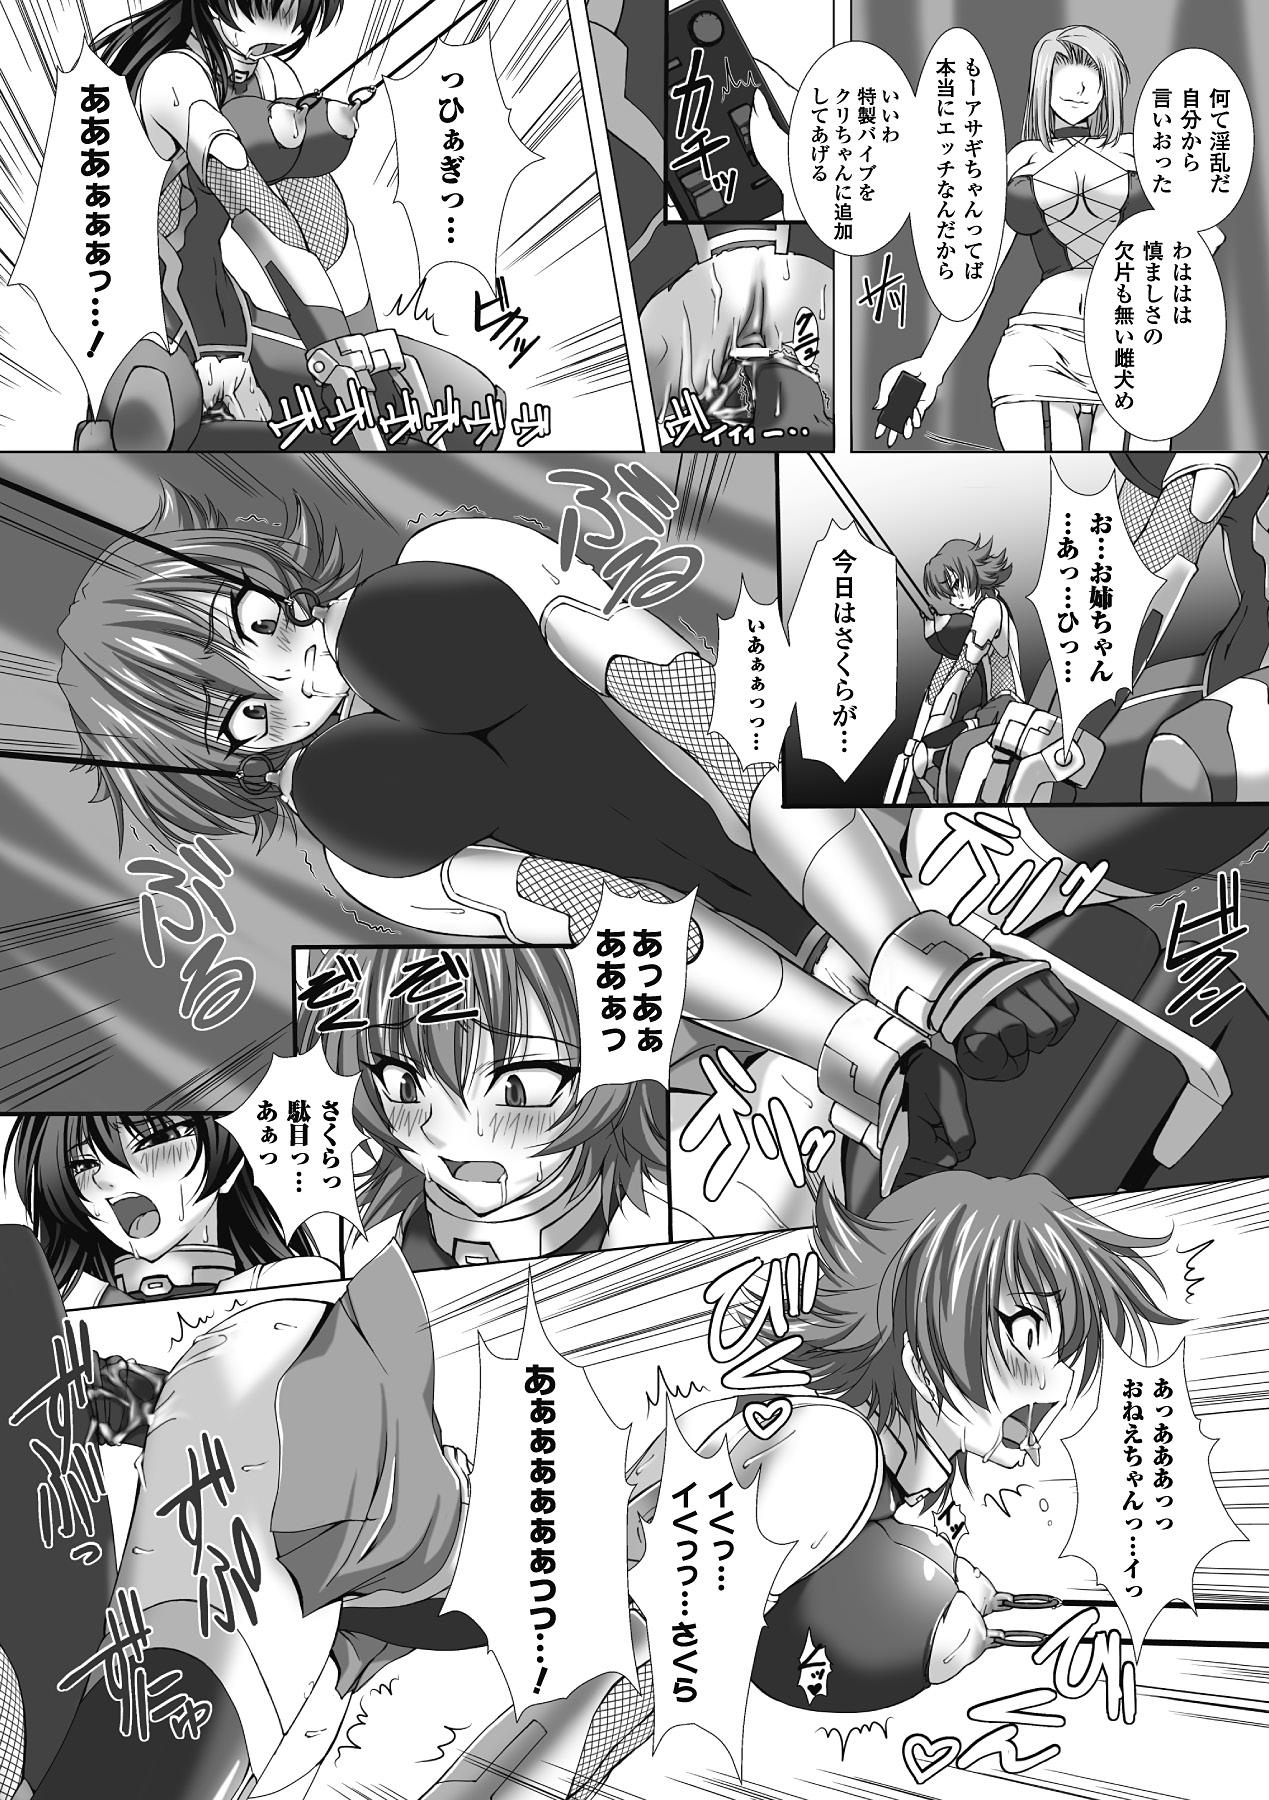 Livecam Megami Crisis 1 - Taimanin asagi Gang - Page 10